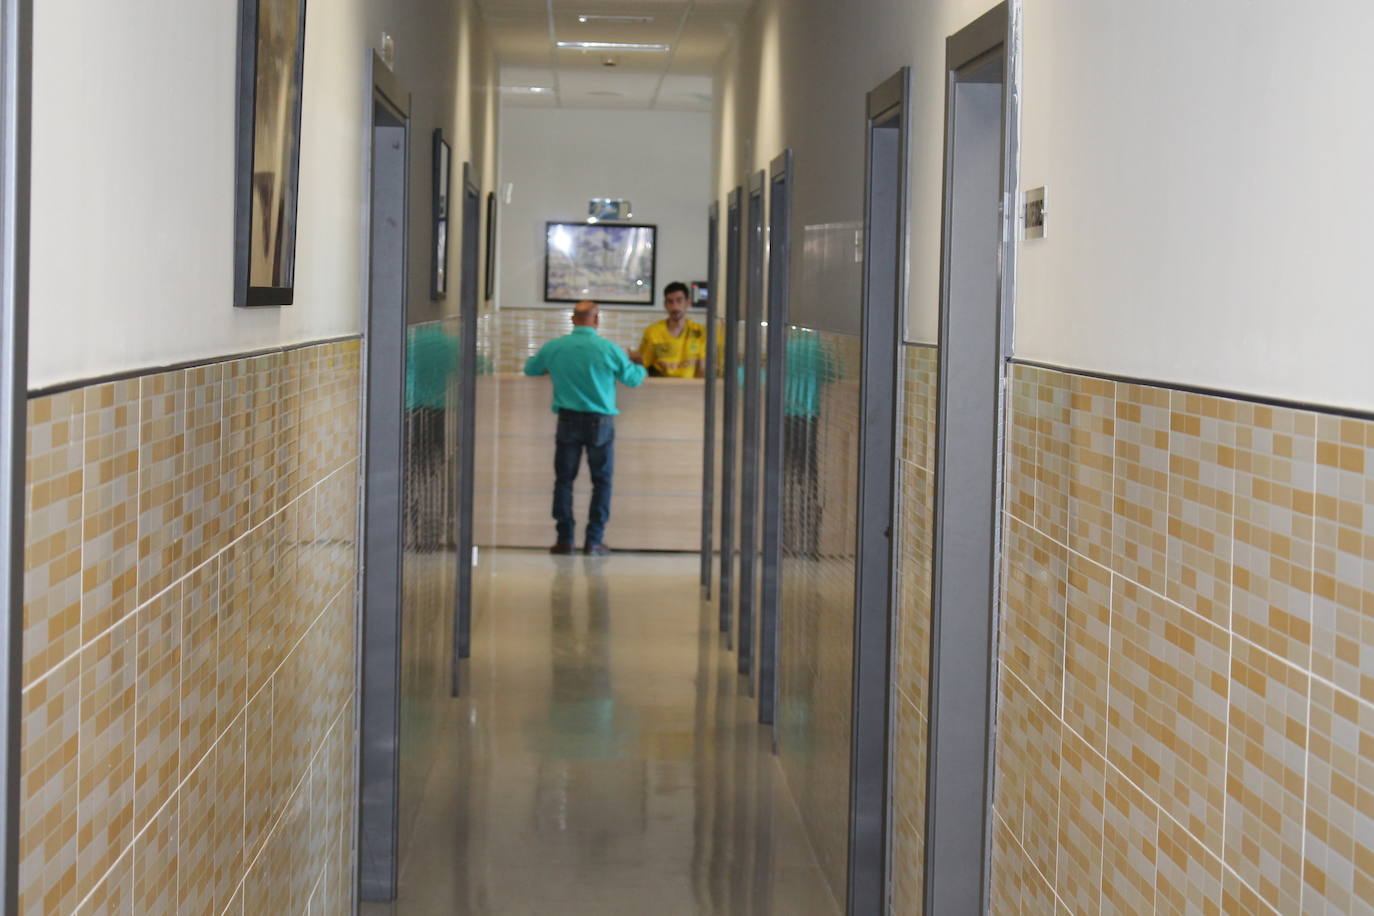 Abre las puertas de las modernas instalaciones en las que los internos almerienses se preparan para su total reinserción